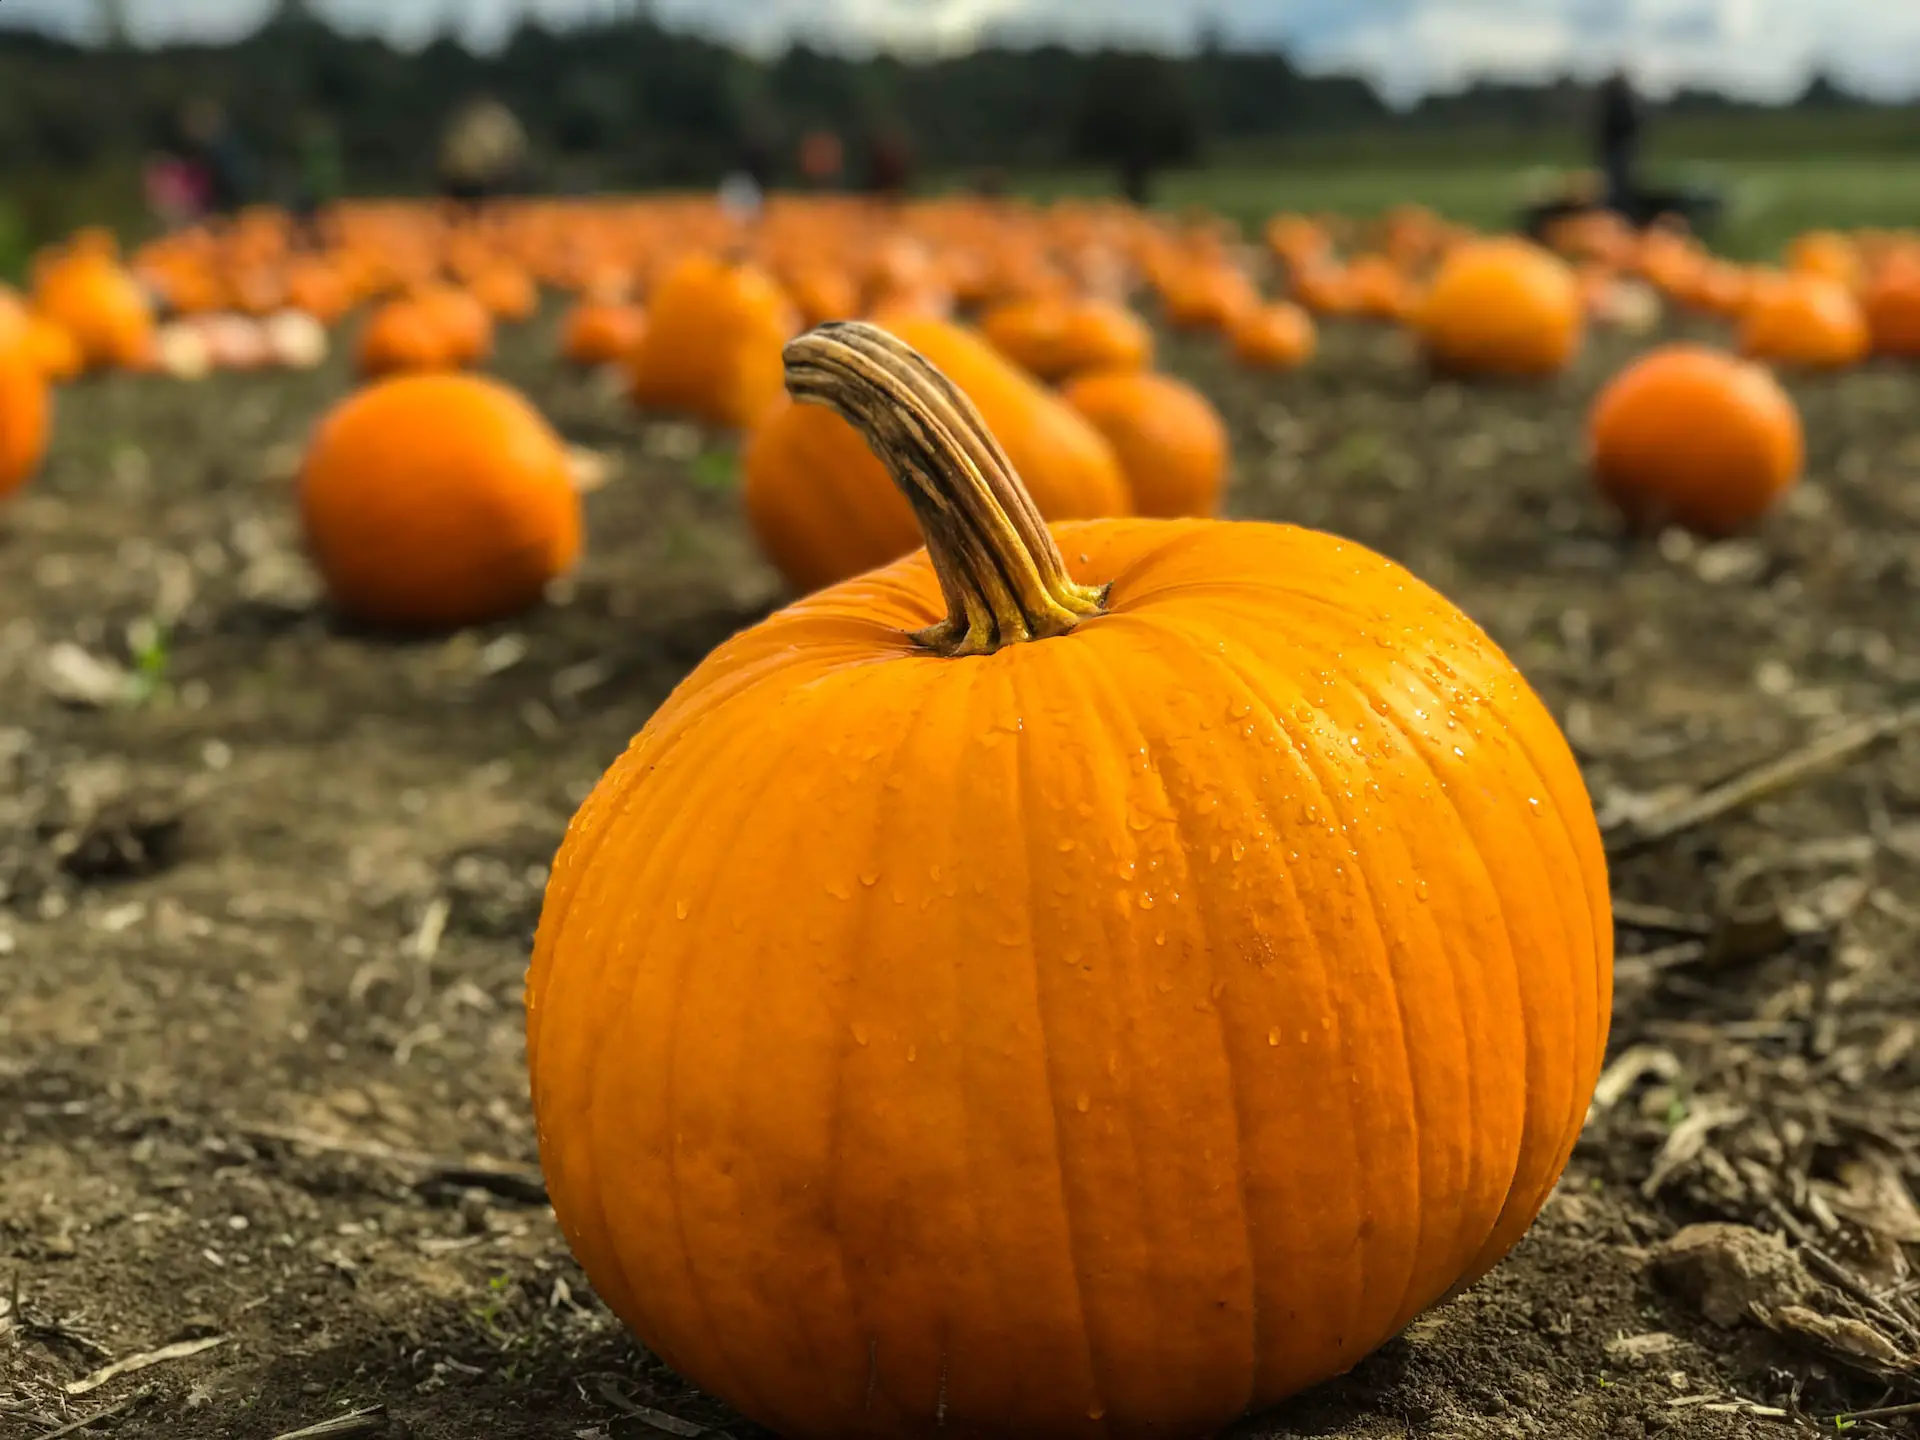 A pumpkin sitting in a pumpkin patch